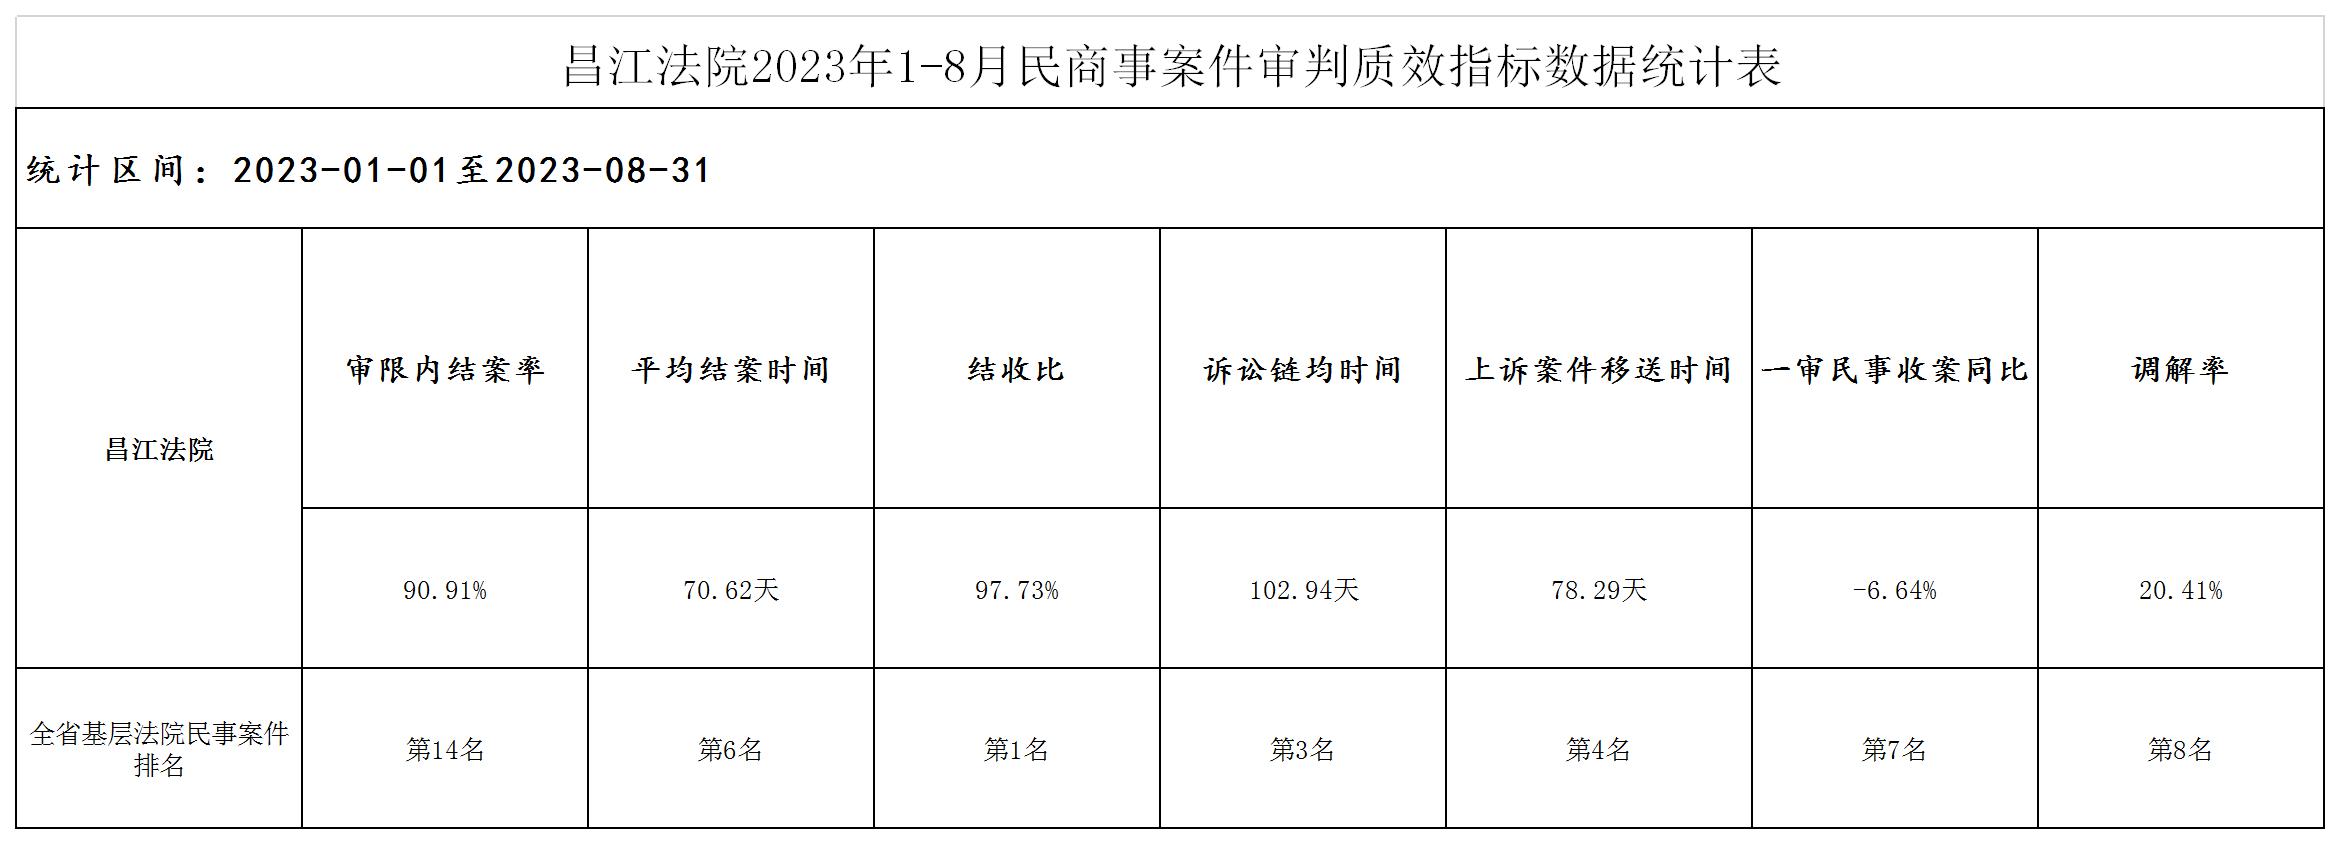 昌江法院2023年1-8月民商事案件审判质效指标数据统计表（事务公开2023年9月4日）.jpg